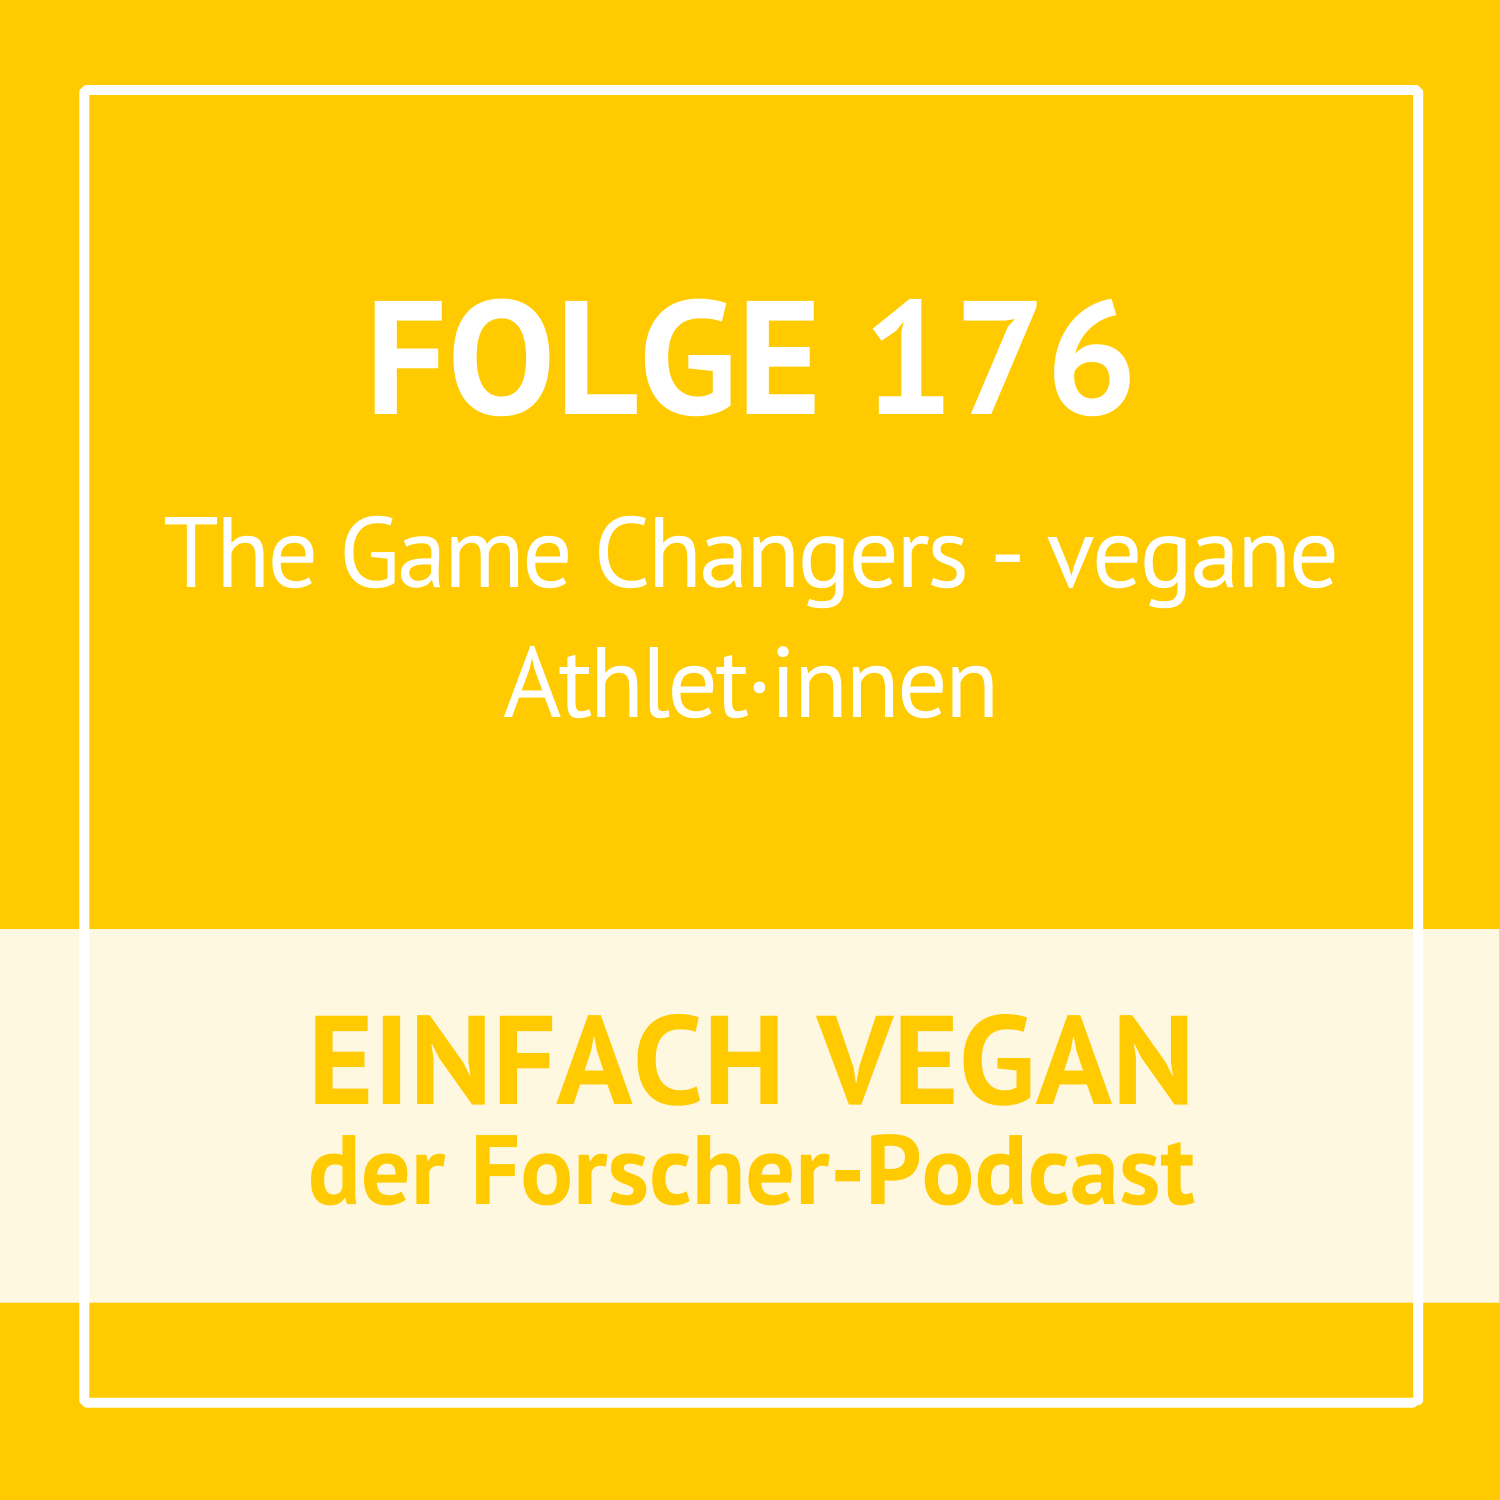 Folge 176 - The GameChangers - vegane Hochleistungssportler*innen